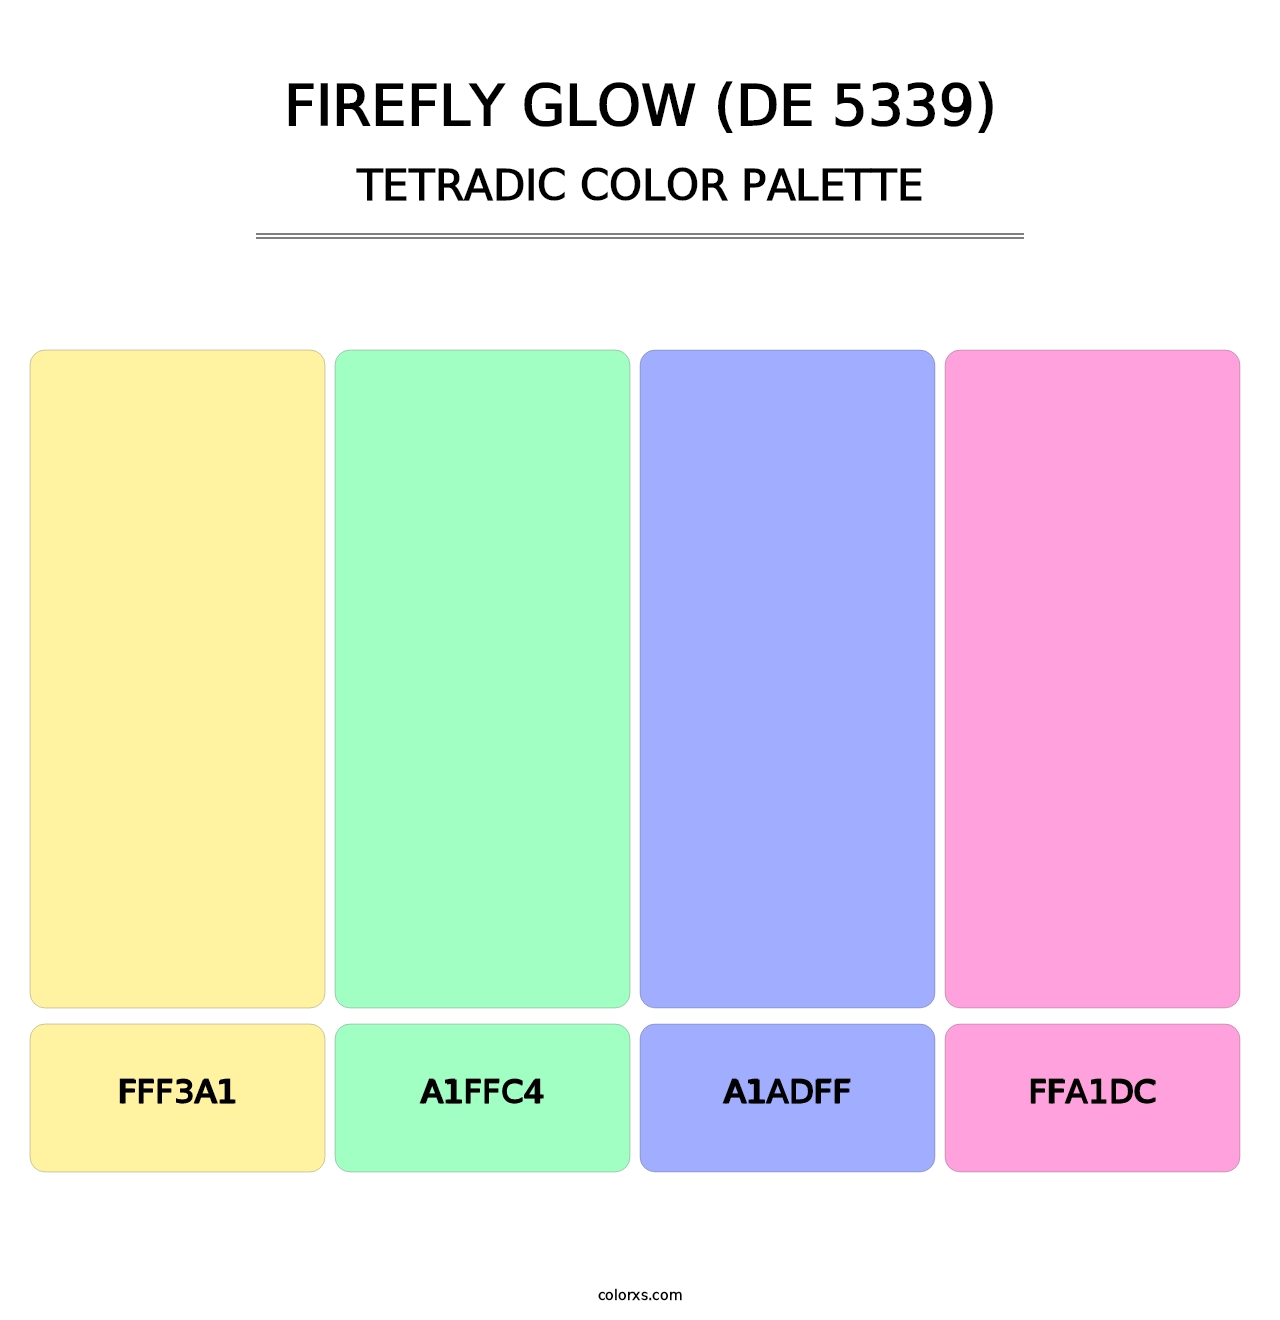 Firefly Glow (DE 5339) - Tetradic Color Palette